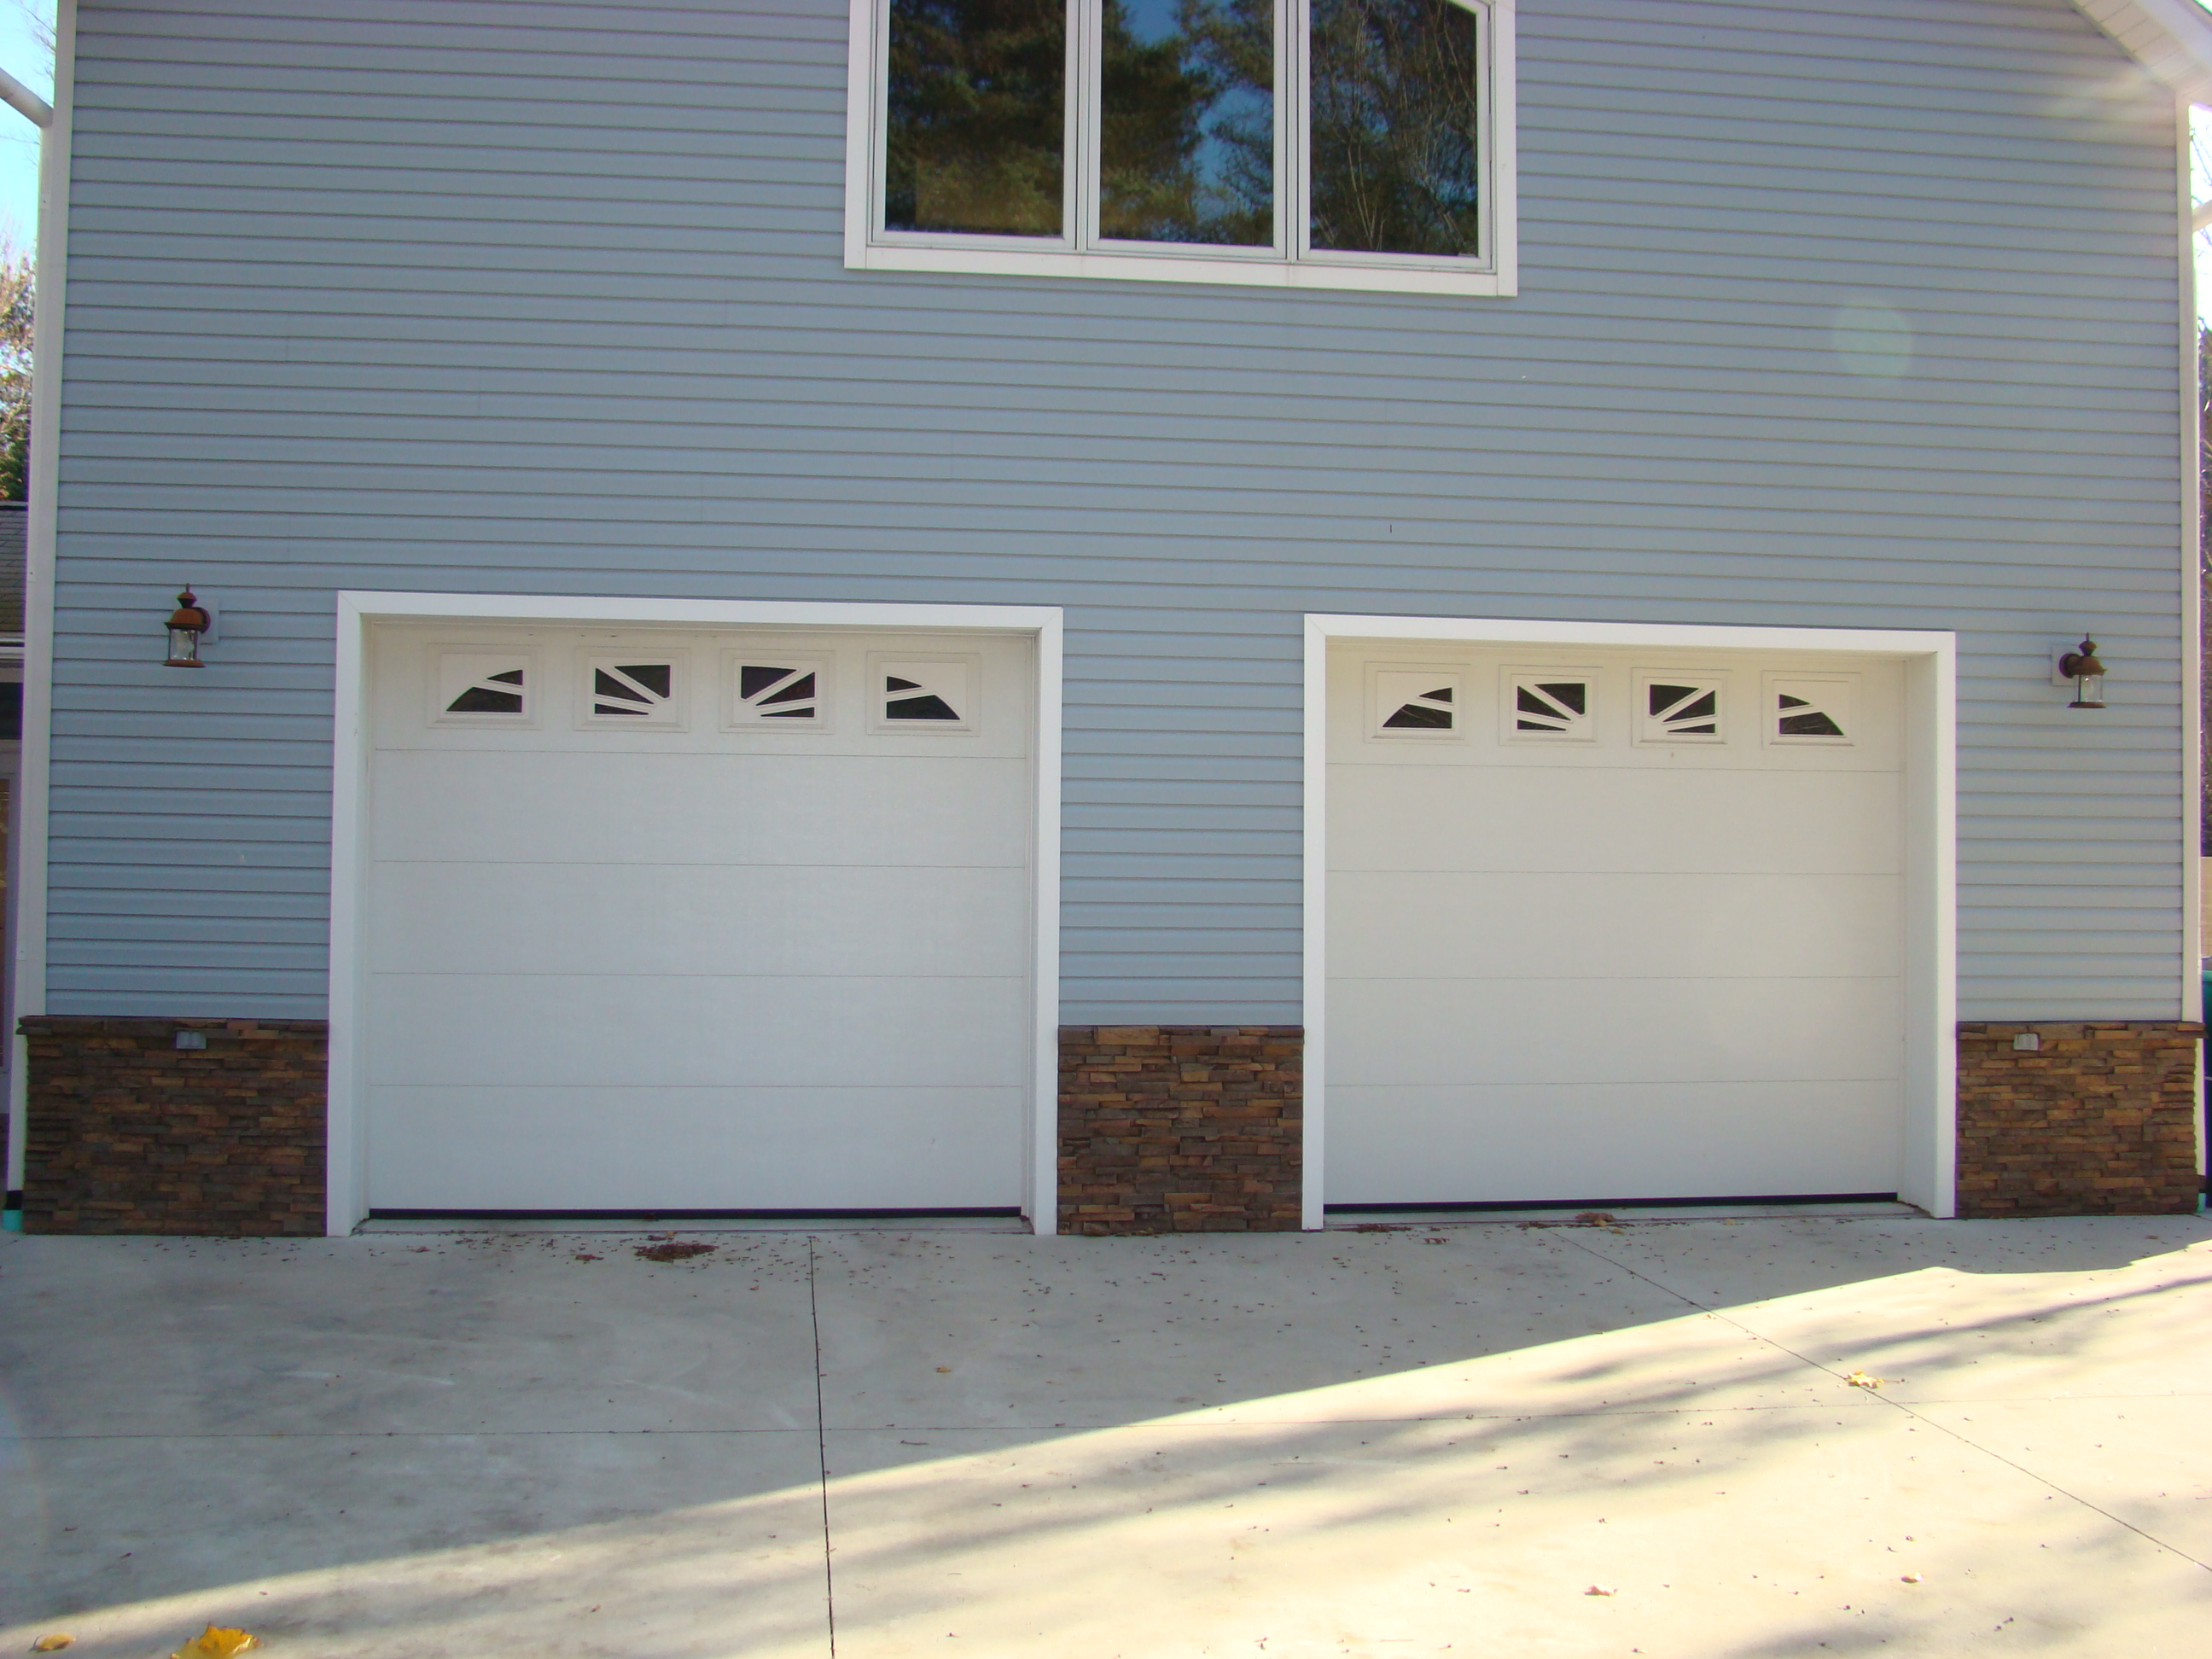 Wainscoting panels fit snugly between garage doors.